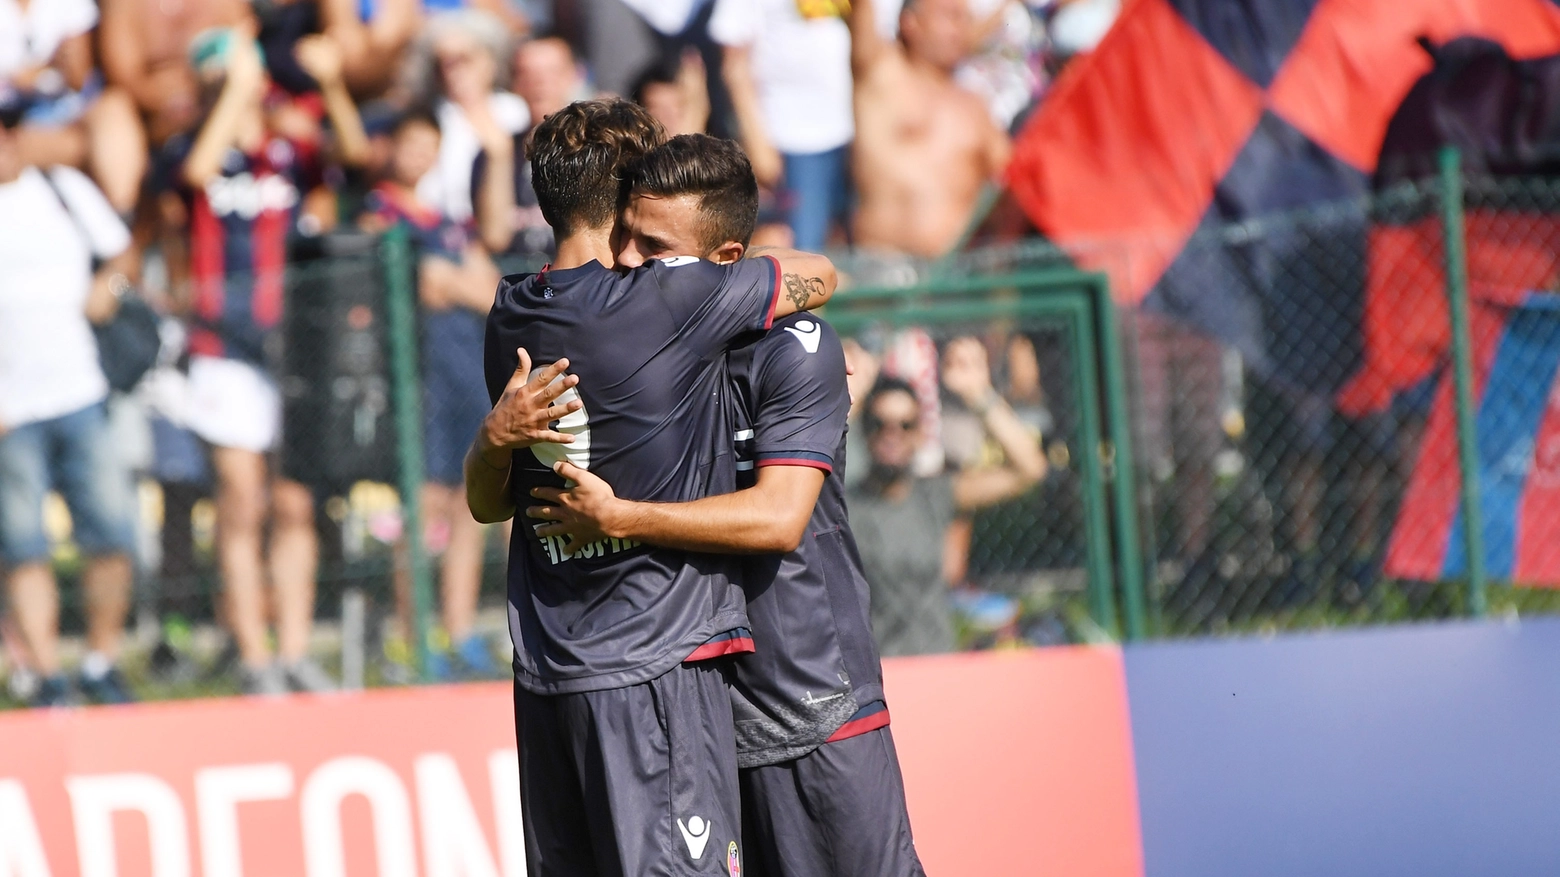 L'abbraccio dopo il gol fra Verdi e Di Francesco (foto Schicchi)